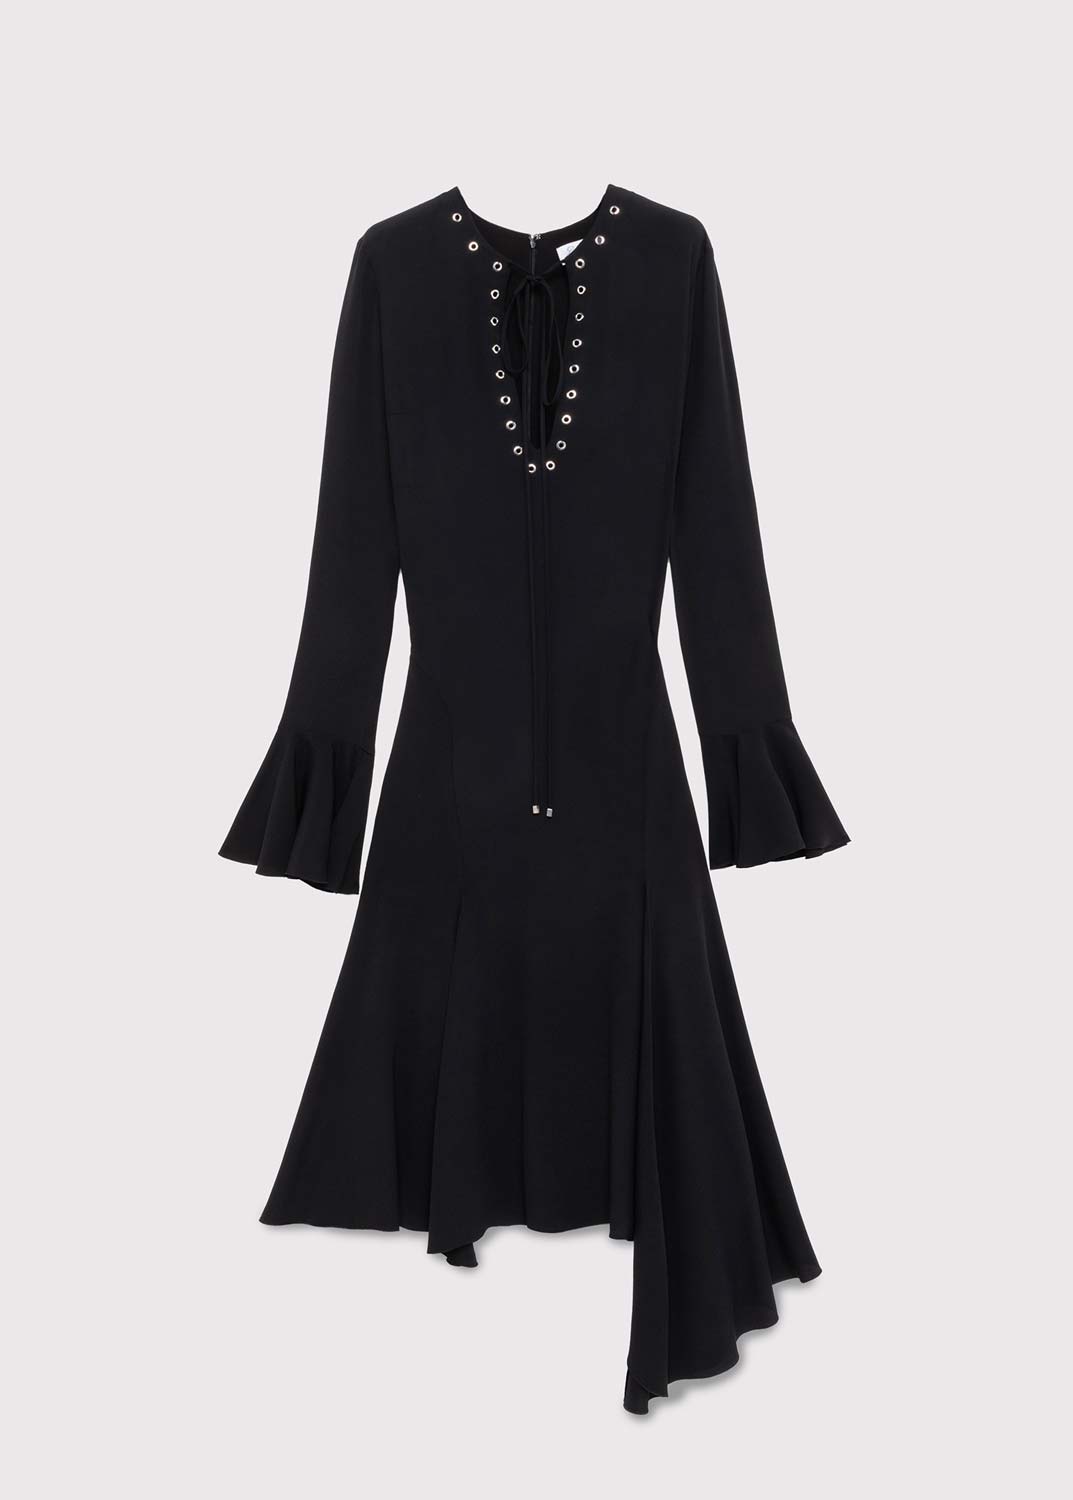 Louis Vuitton Cut-Out Dress Size 38